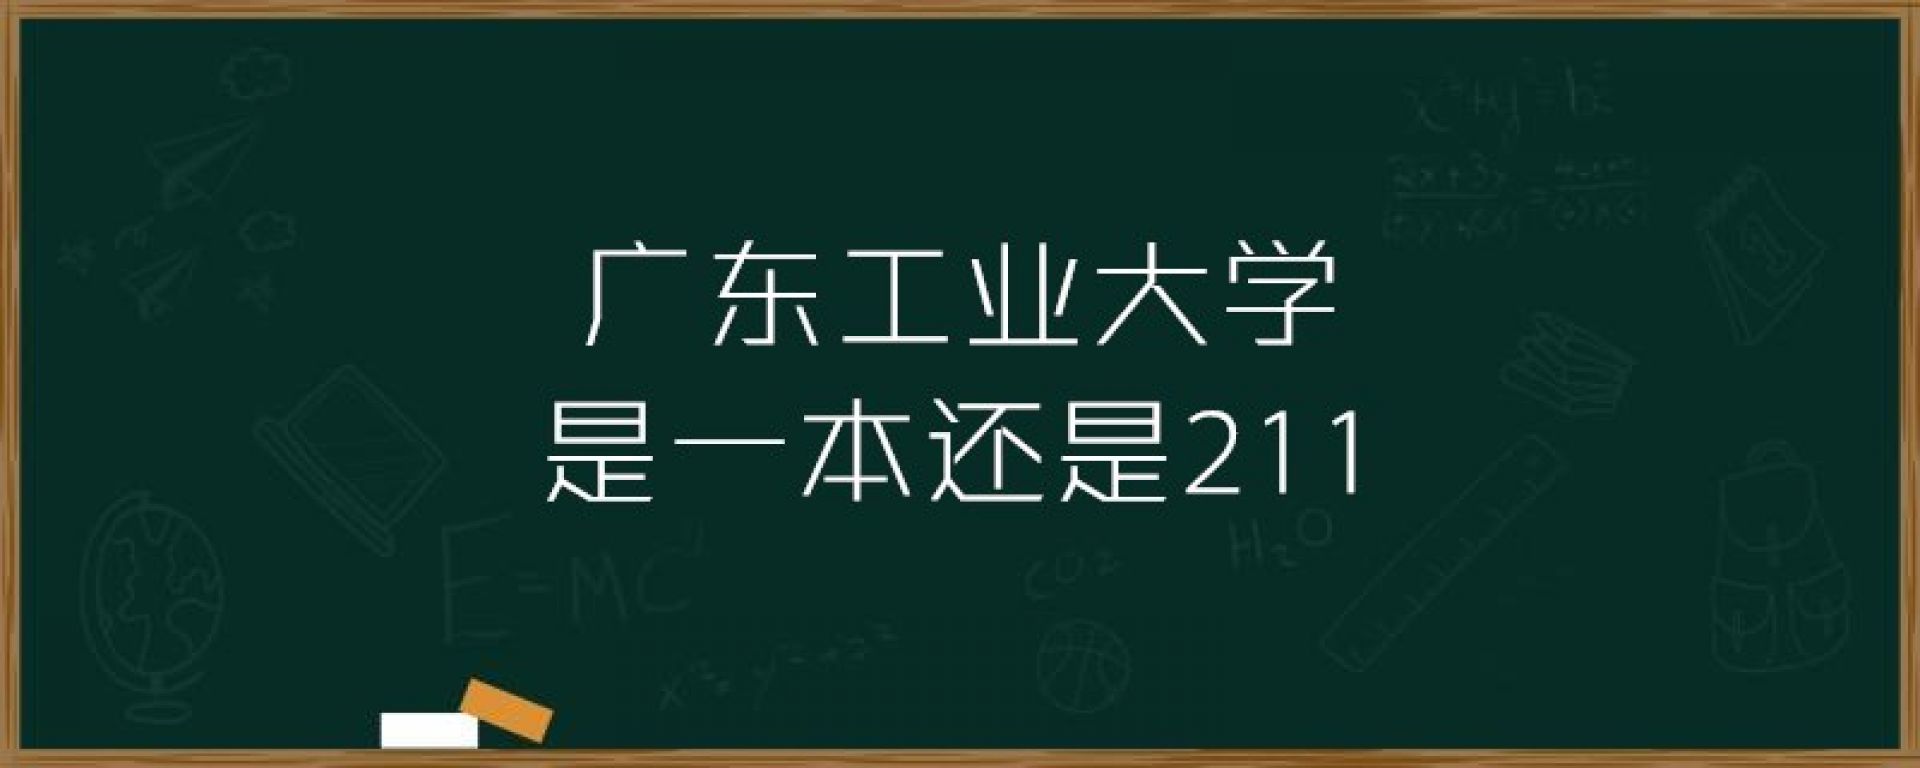 广东工业大学是一本还是211